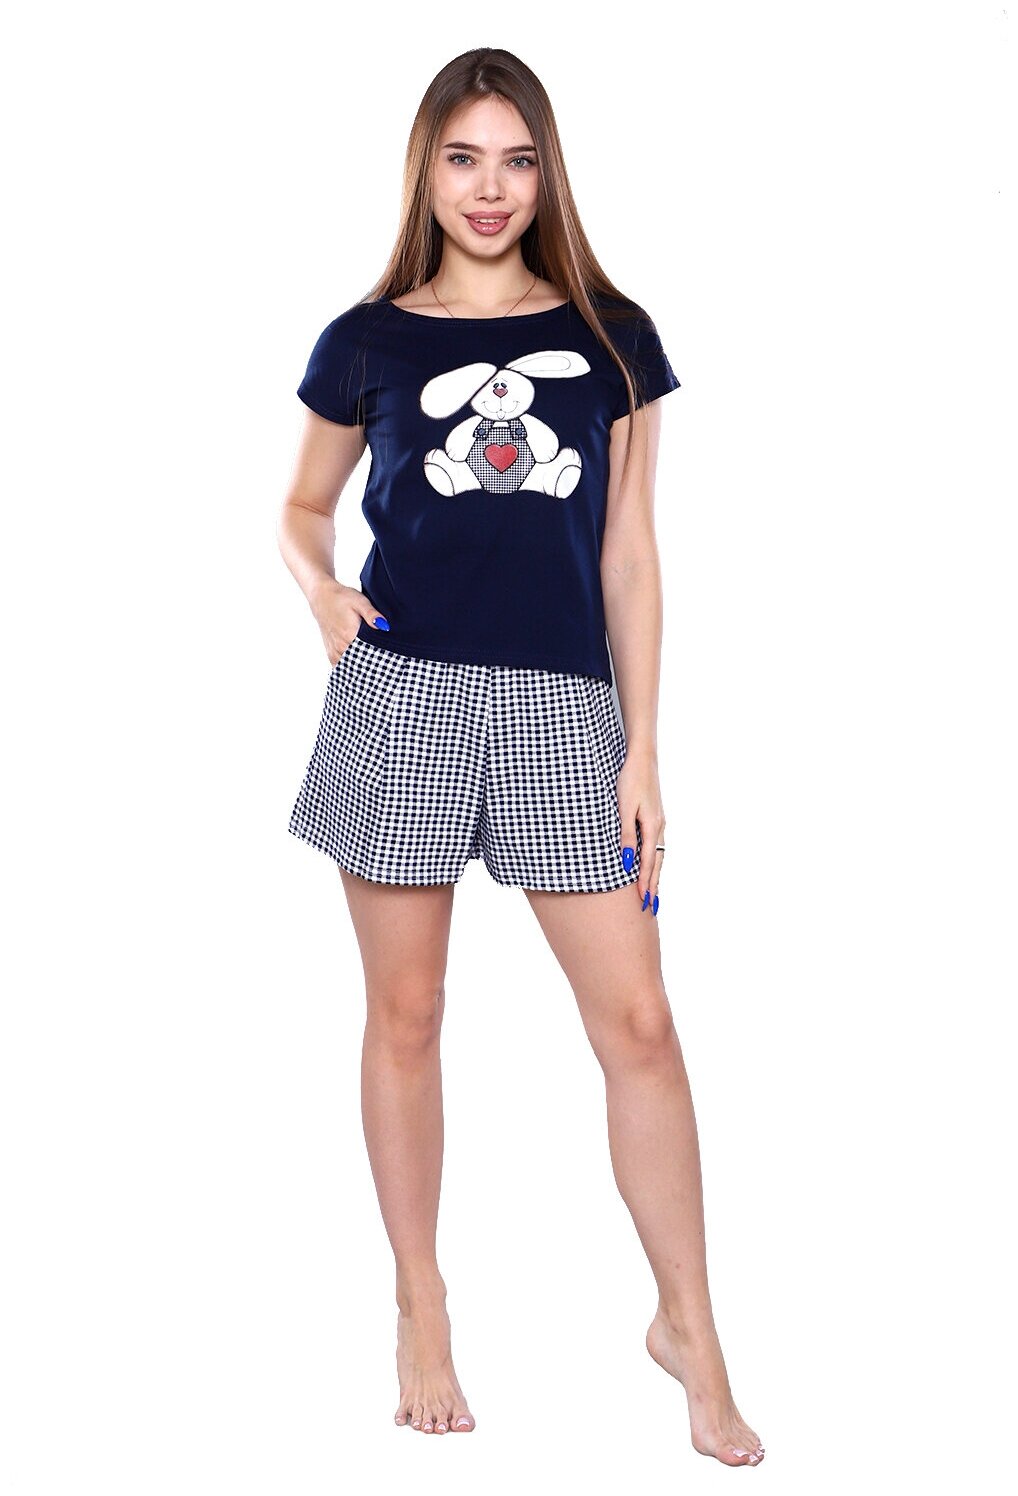 Женский домашний костюм/ пижама (футболка+ шорты) в клетку темно-синего цвета, размер 54 - фотография № 1